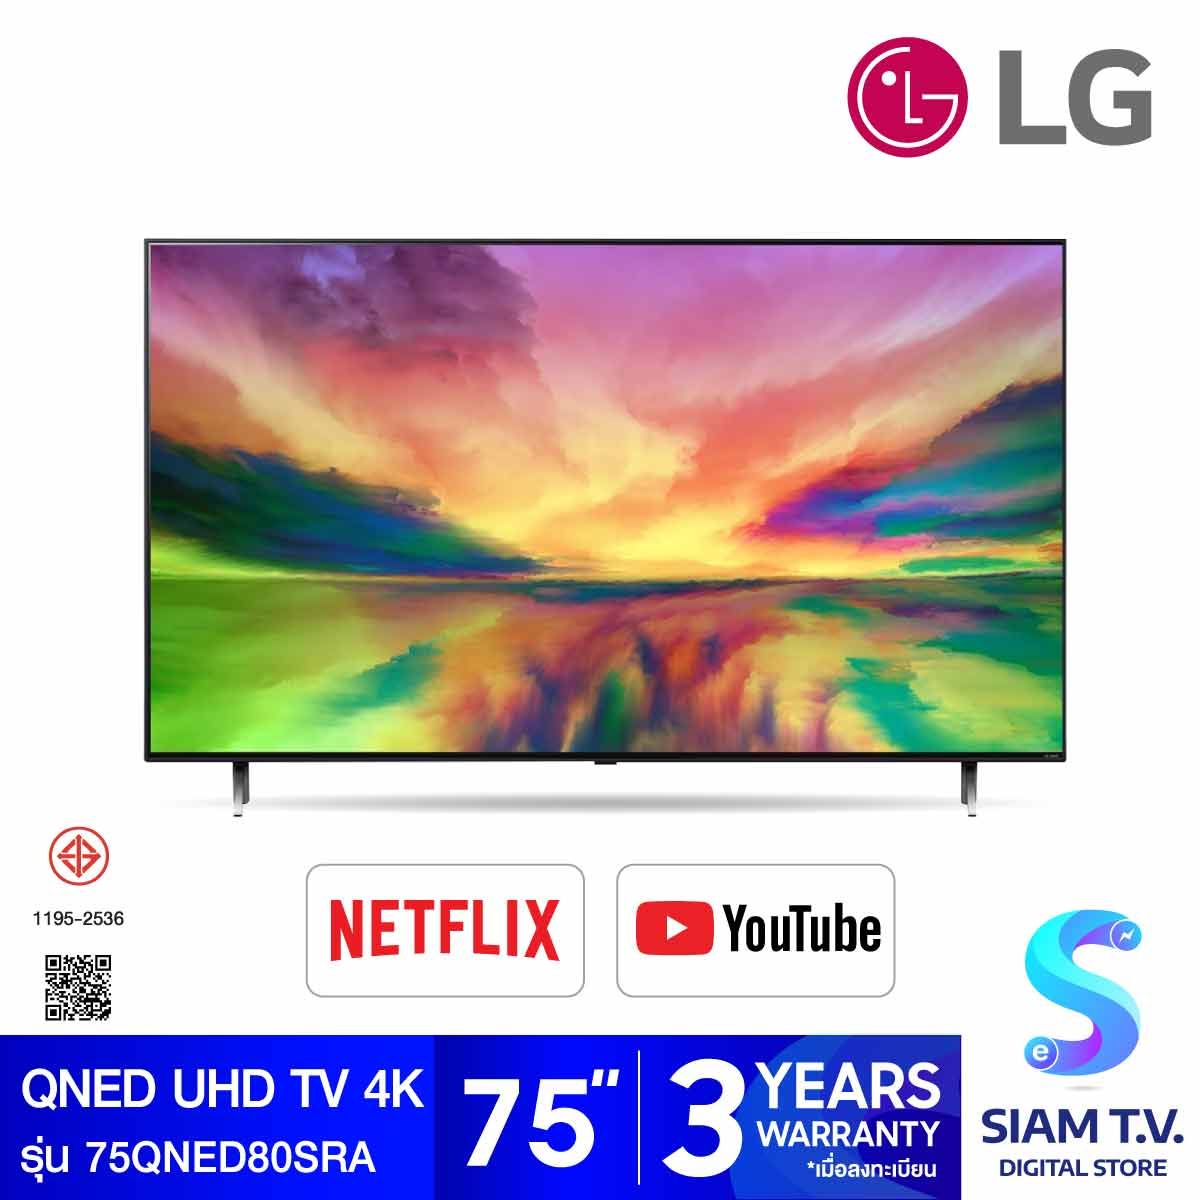 LG QNED UHD TV 4K 120 Hz รุ่น 75QNED80SRA QNED สมาร์ททีวี 4K 120 Hz ขนาด 75 นิ้ว ปี 2023 LG ThinQ AI